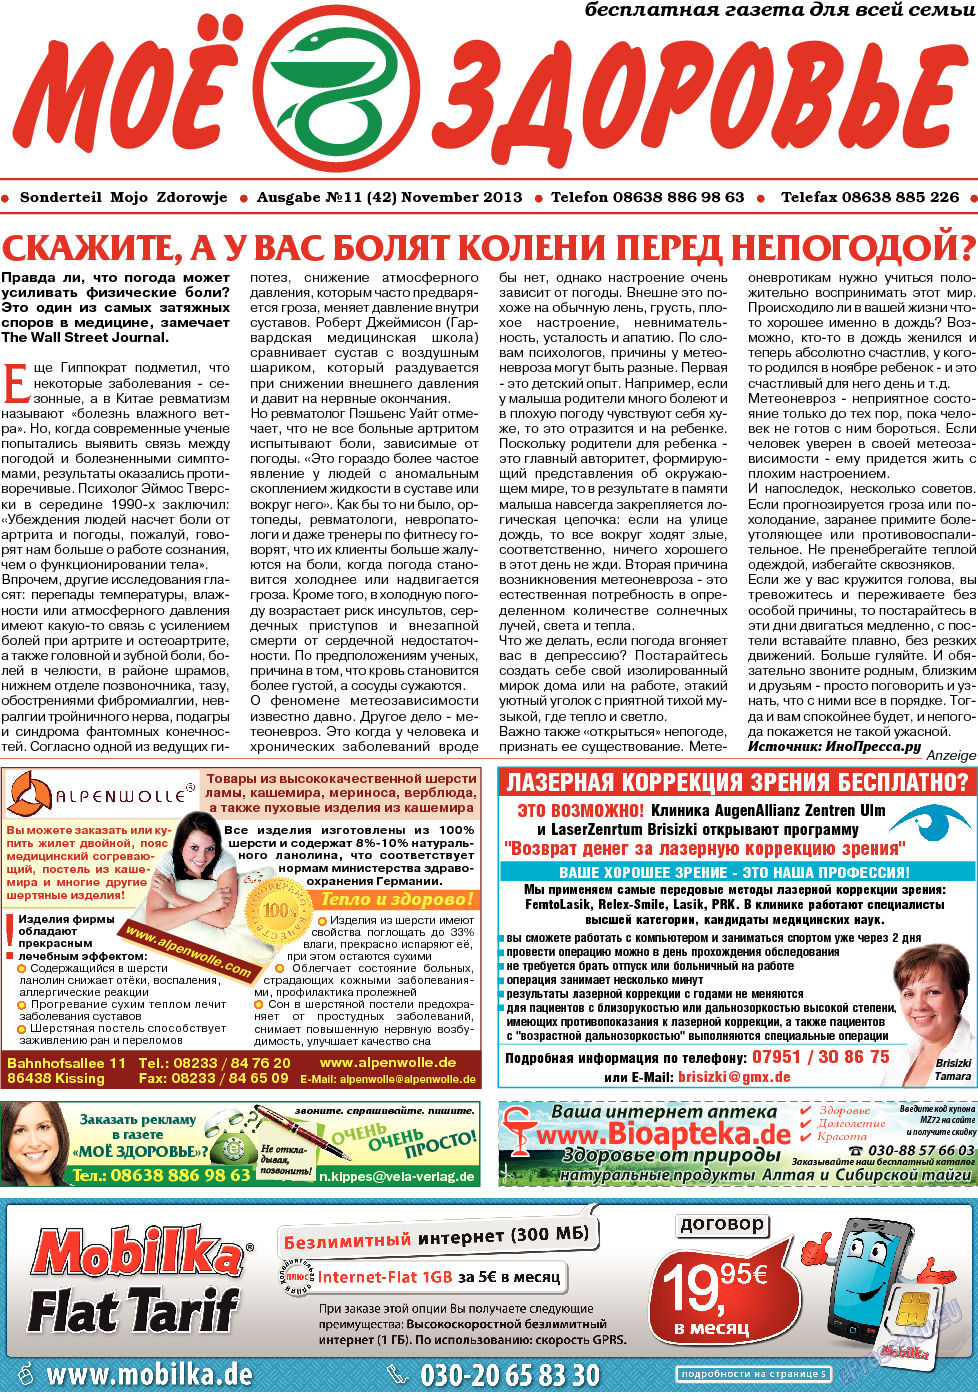 Кругозор (газета). 2013 год, номер 11, стр. 11